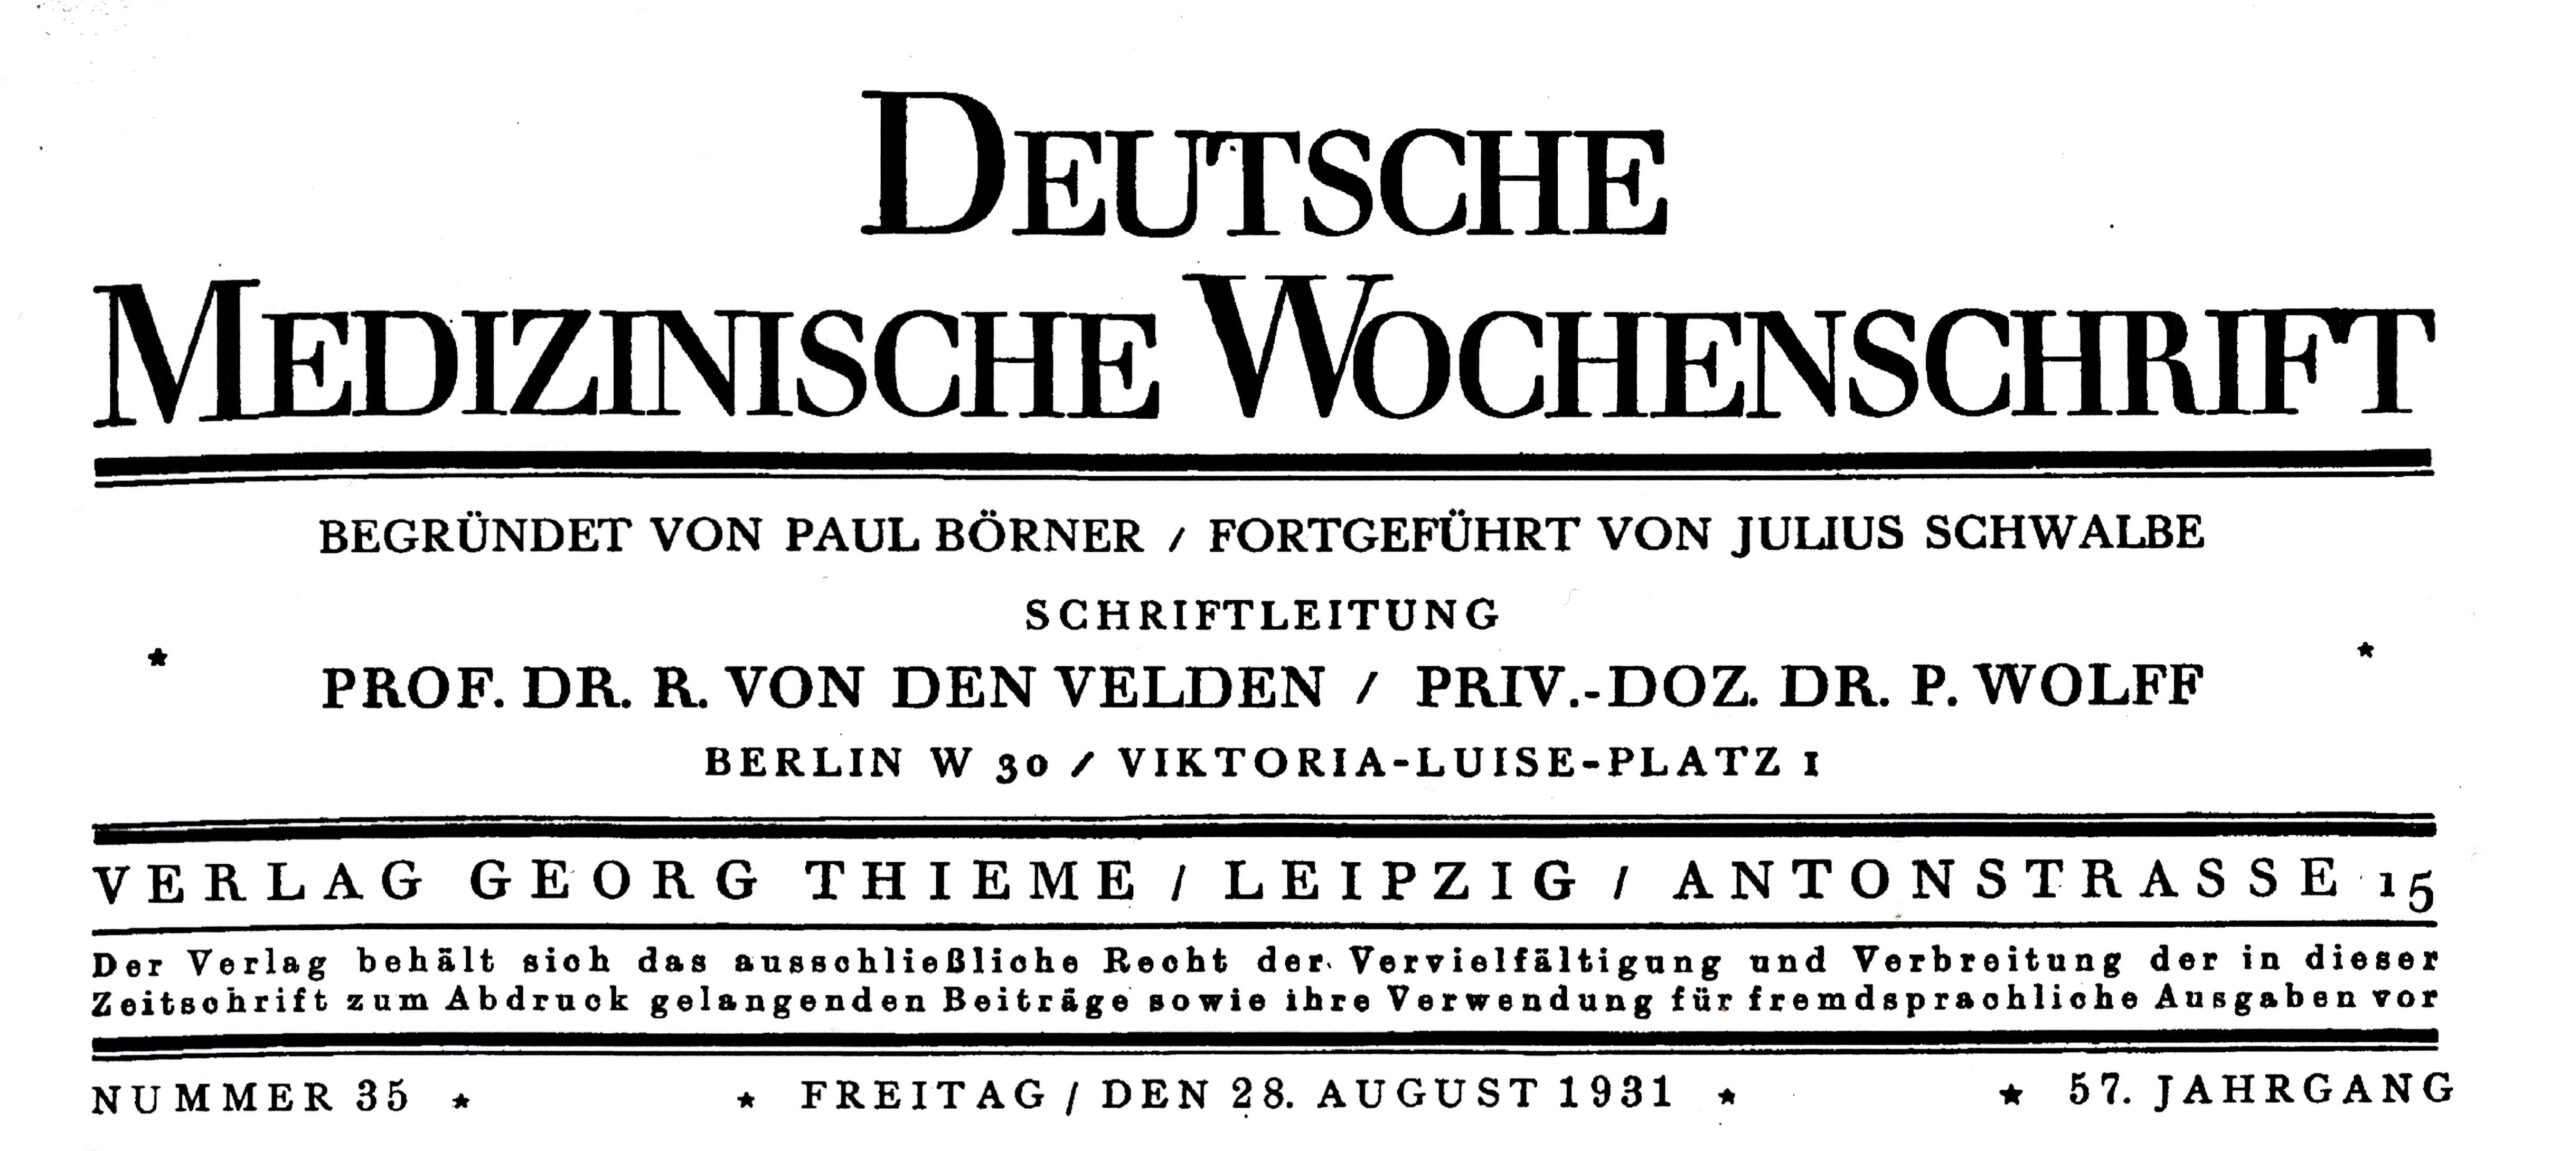 P. O. Wolff, editor of the Deutsche Medizinischen Wochenschrift bis 1933